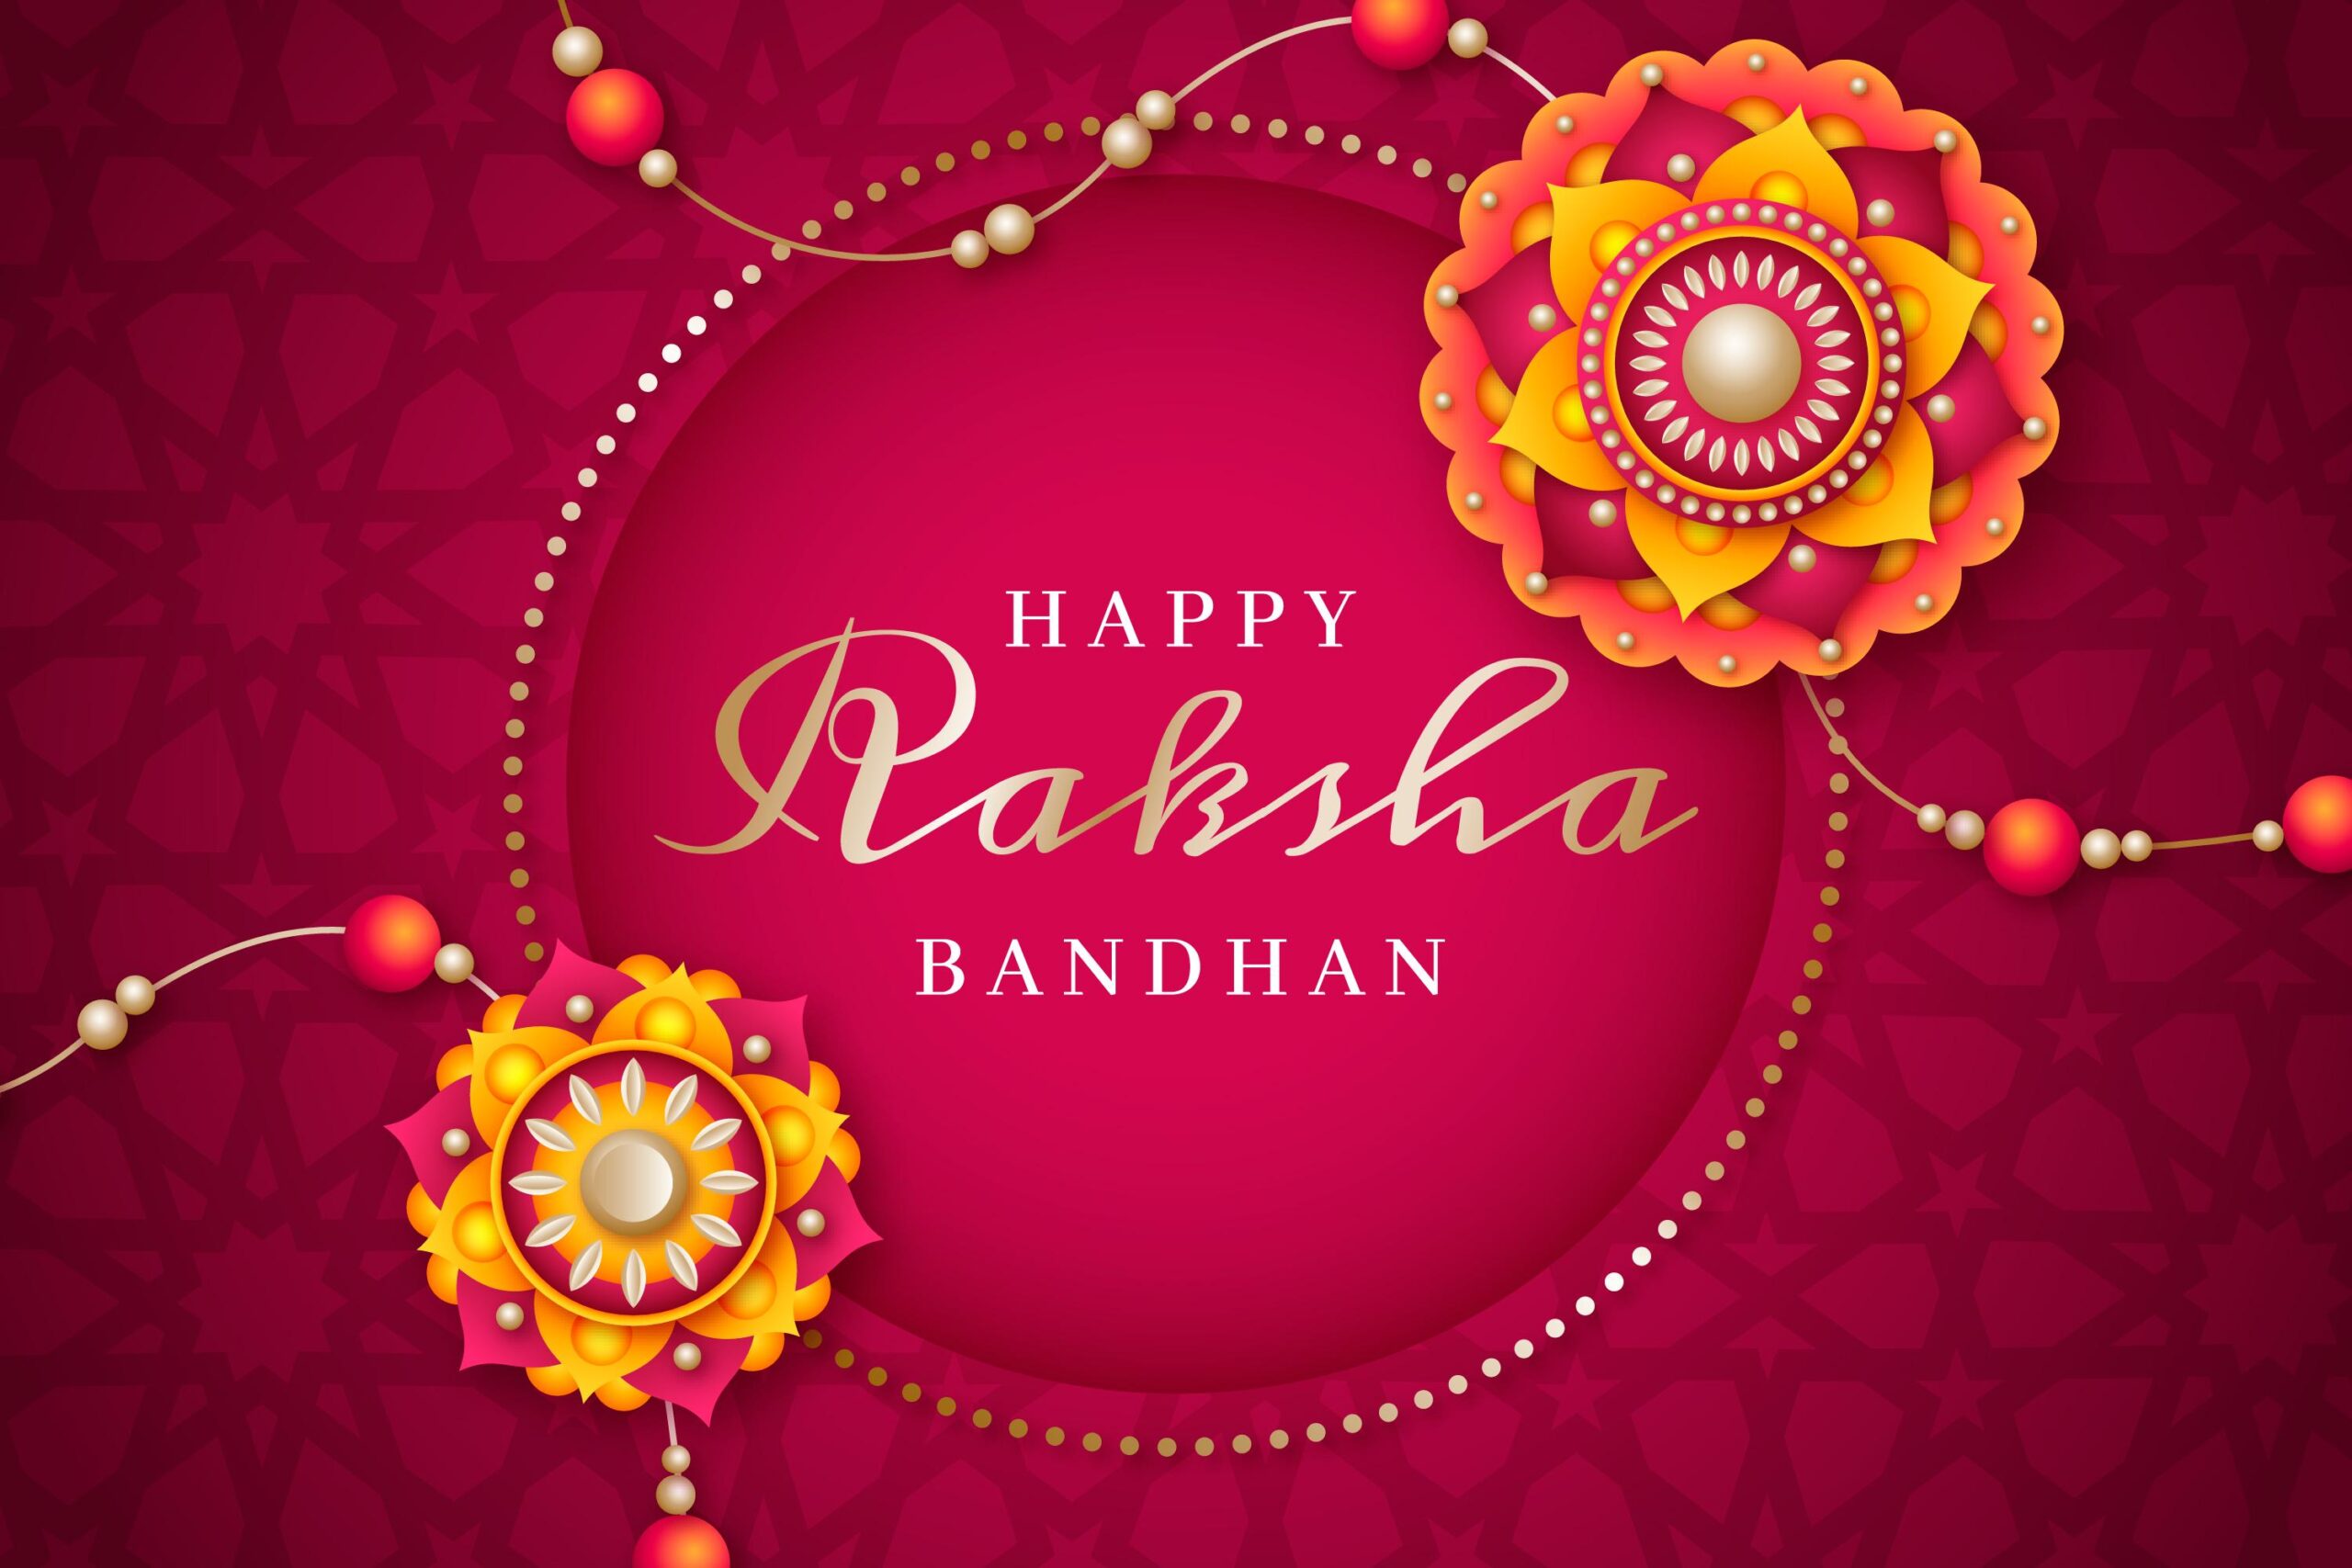 Embrace Siblings Bond with Amazing Raksha Bandhan Gifts